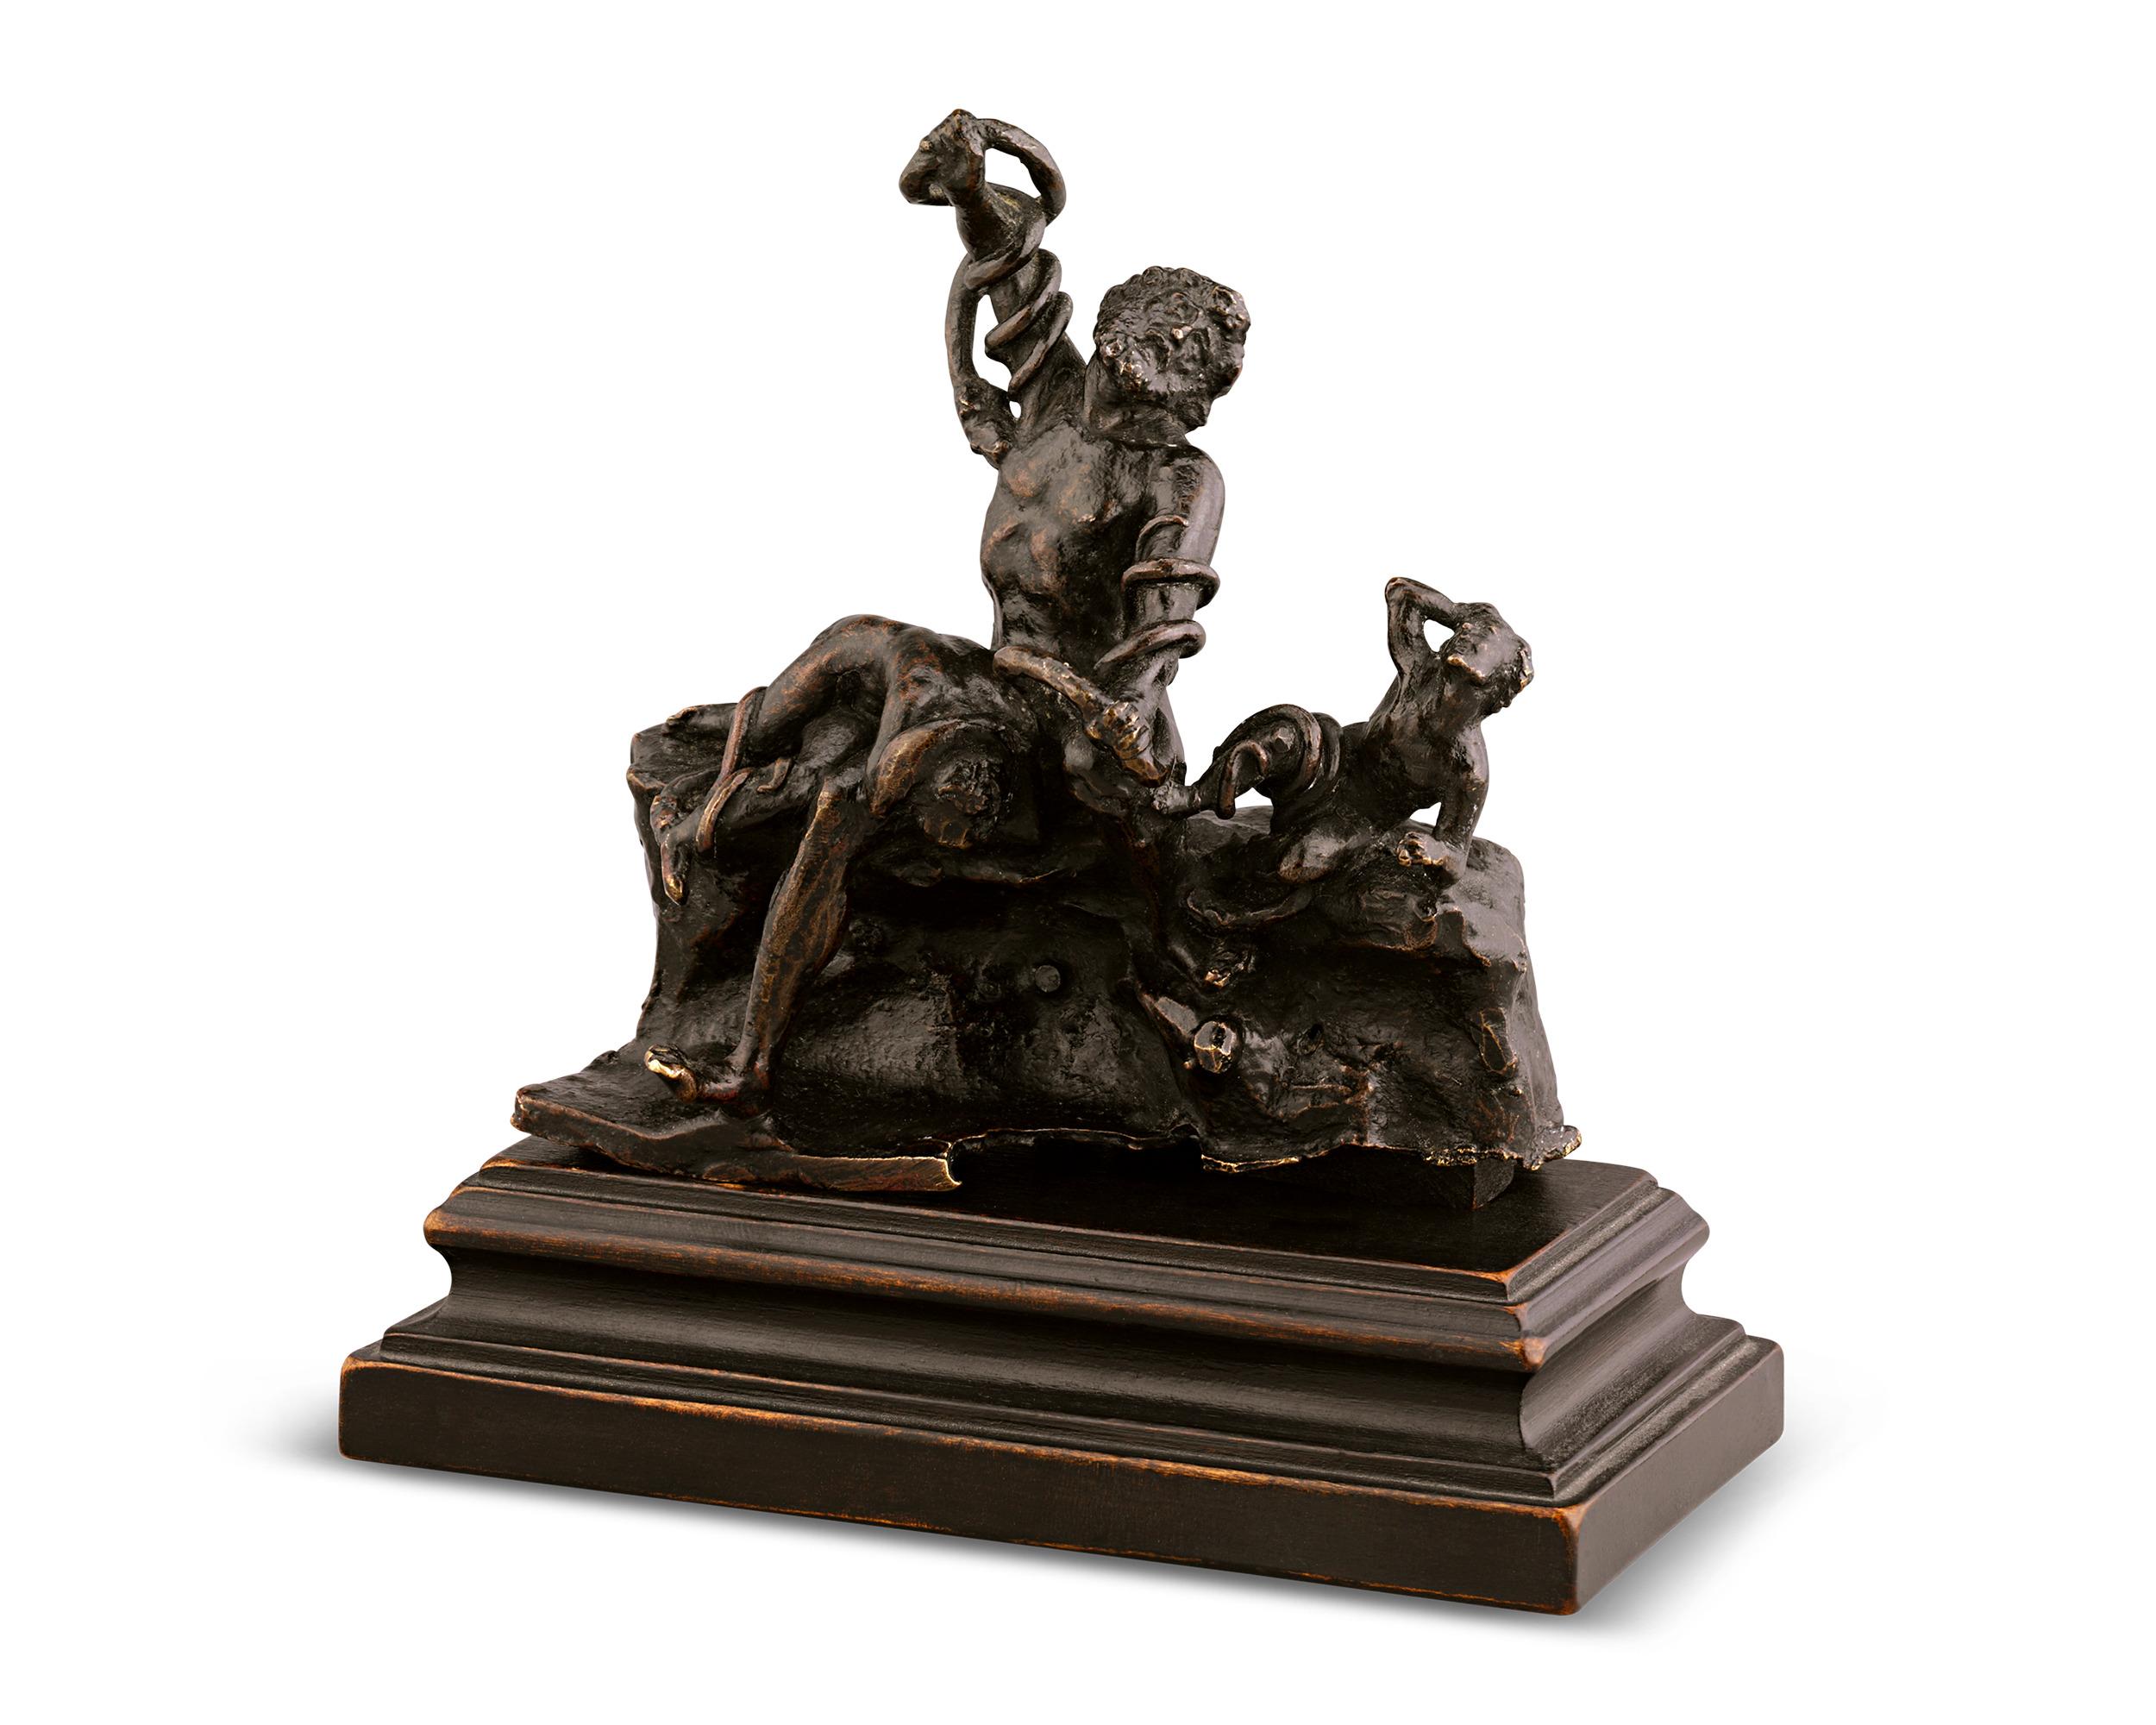 Laocoön And His Sons By Adriaen De Vries - Baroque Sculpture by Adriaen de Vries